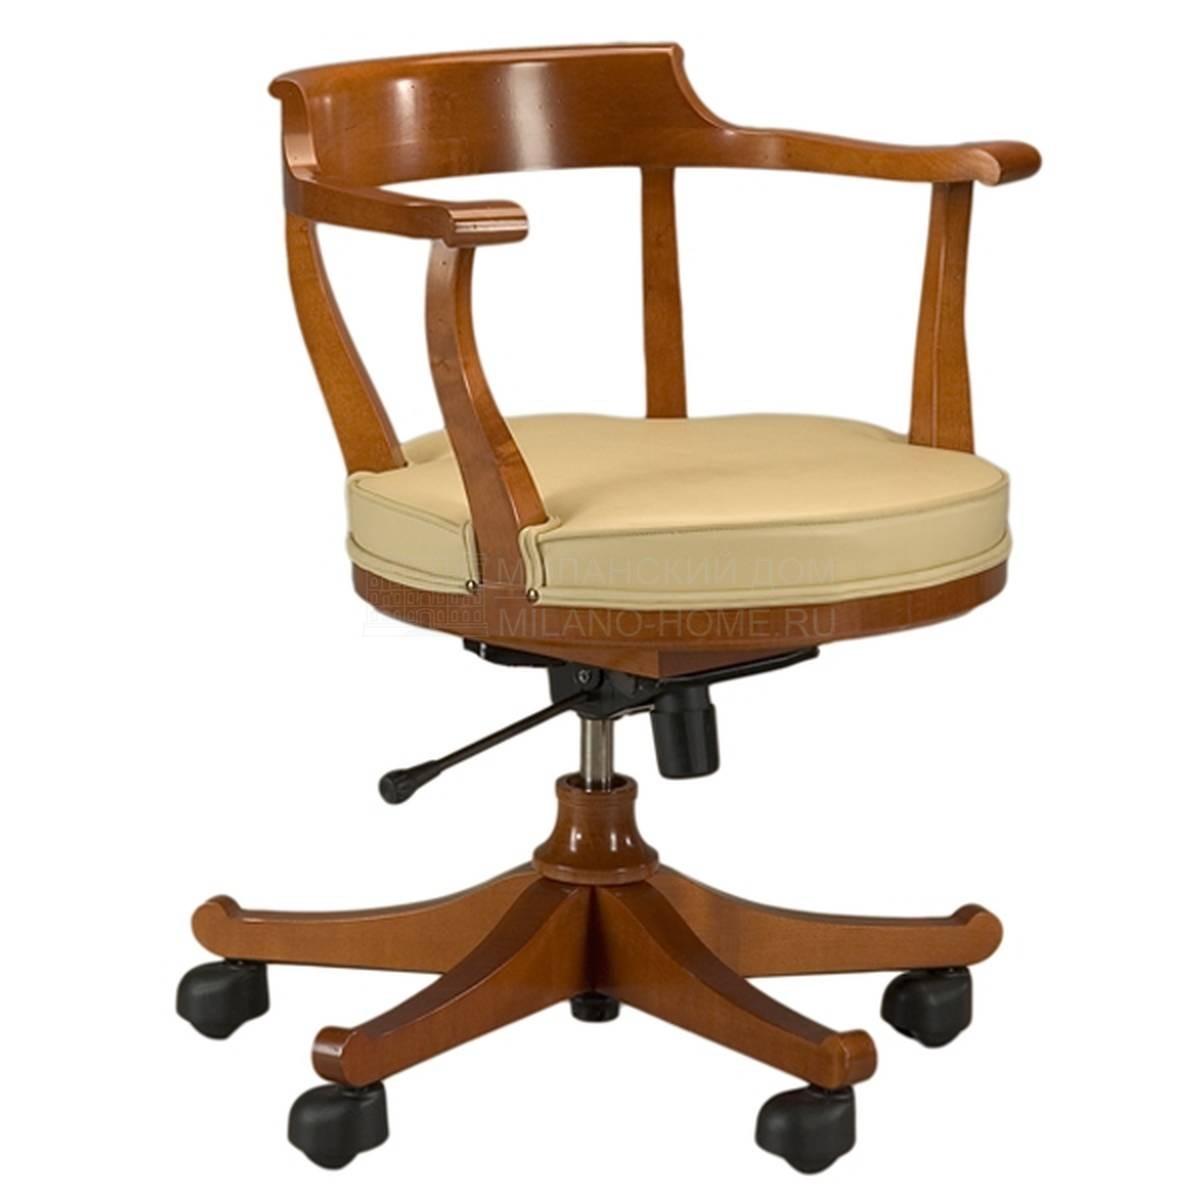 Рабочее кресло Biedermeier Girevole / art.3883 из Италии фабрики MORELATO